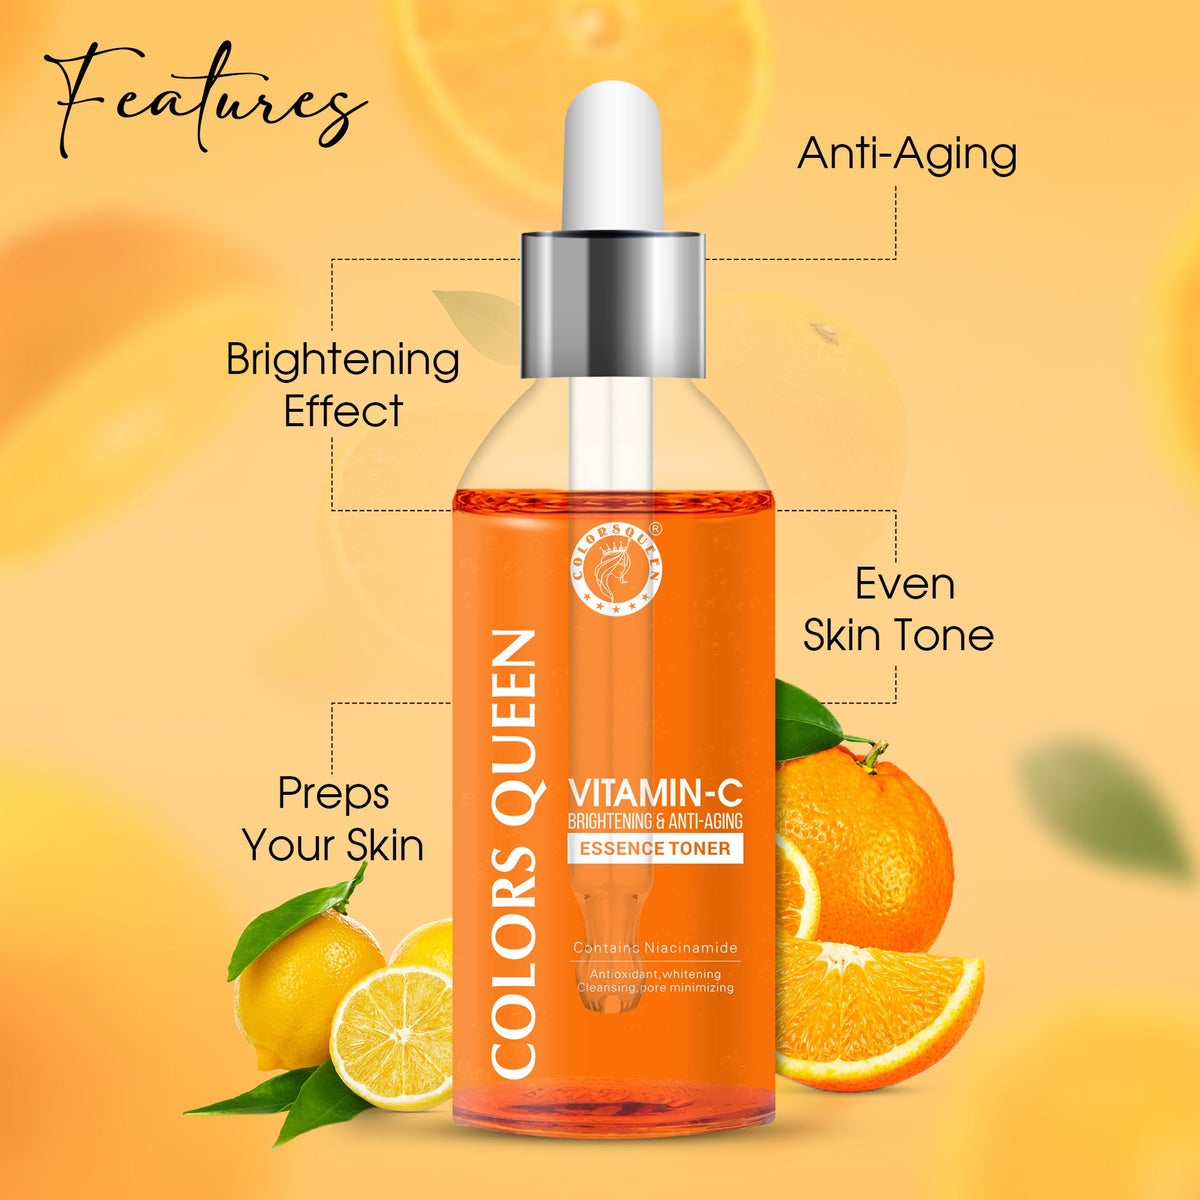 Colors Queen Vitamin-C Brightening & Anti Aging Essence Toner